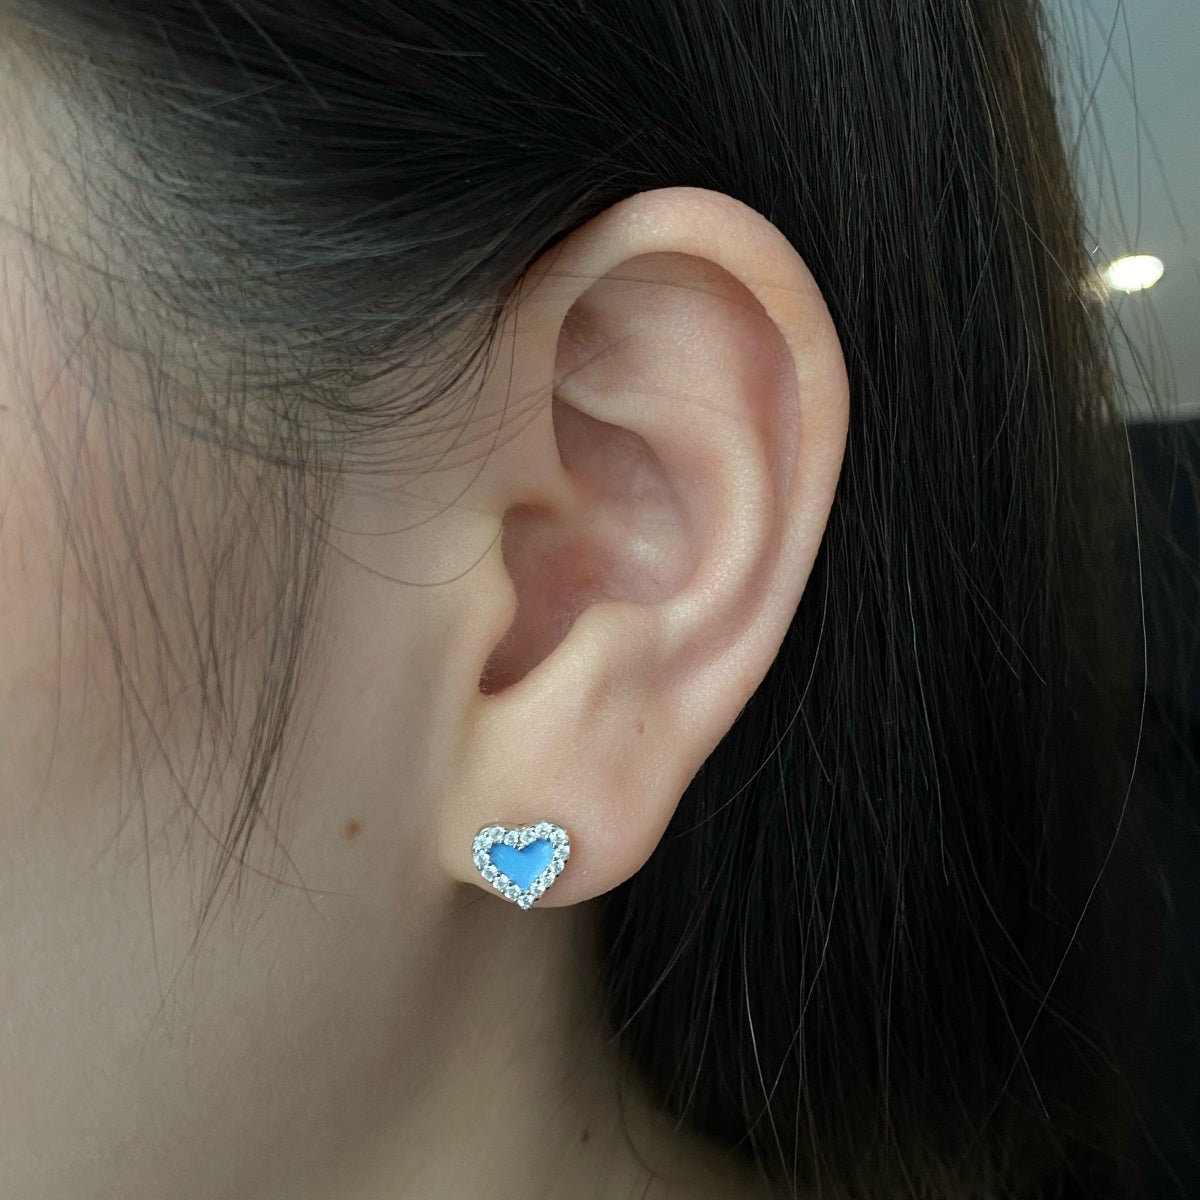 Sterling Silver Colorful Heart Shape Stud Earrings - HK Jewels